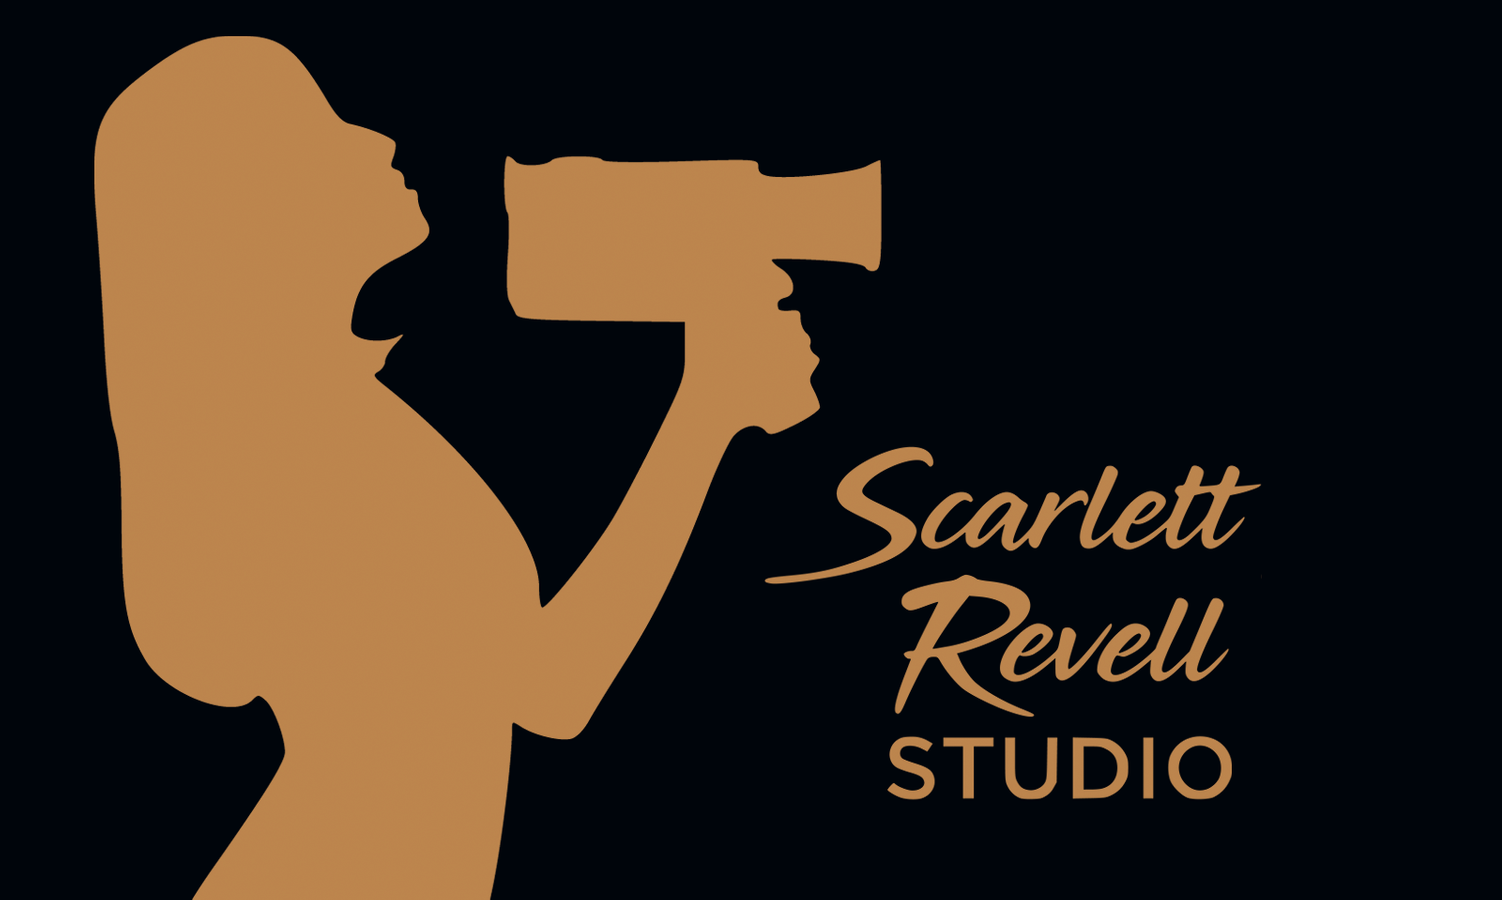 Scarlett Revell Studio